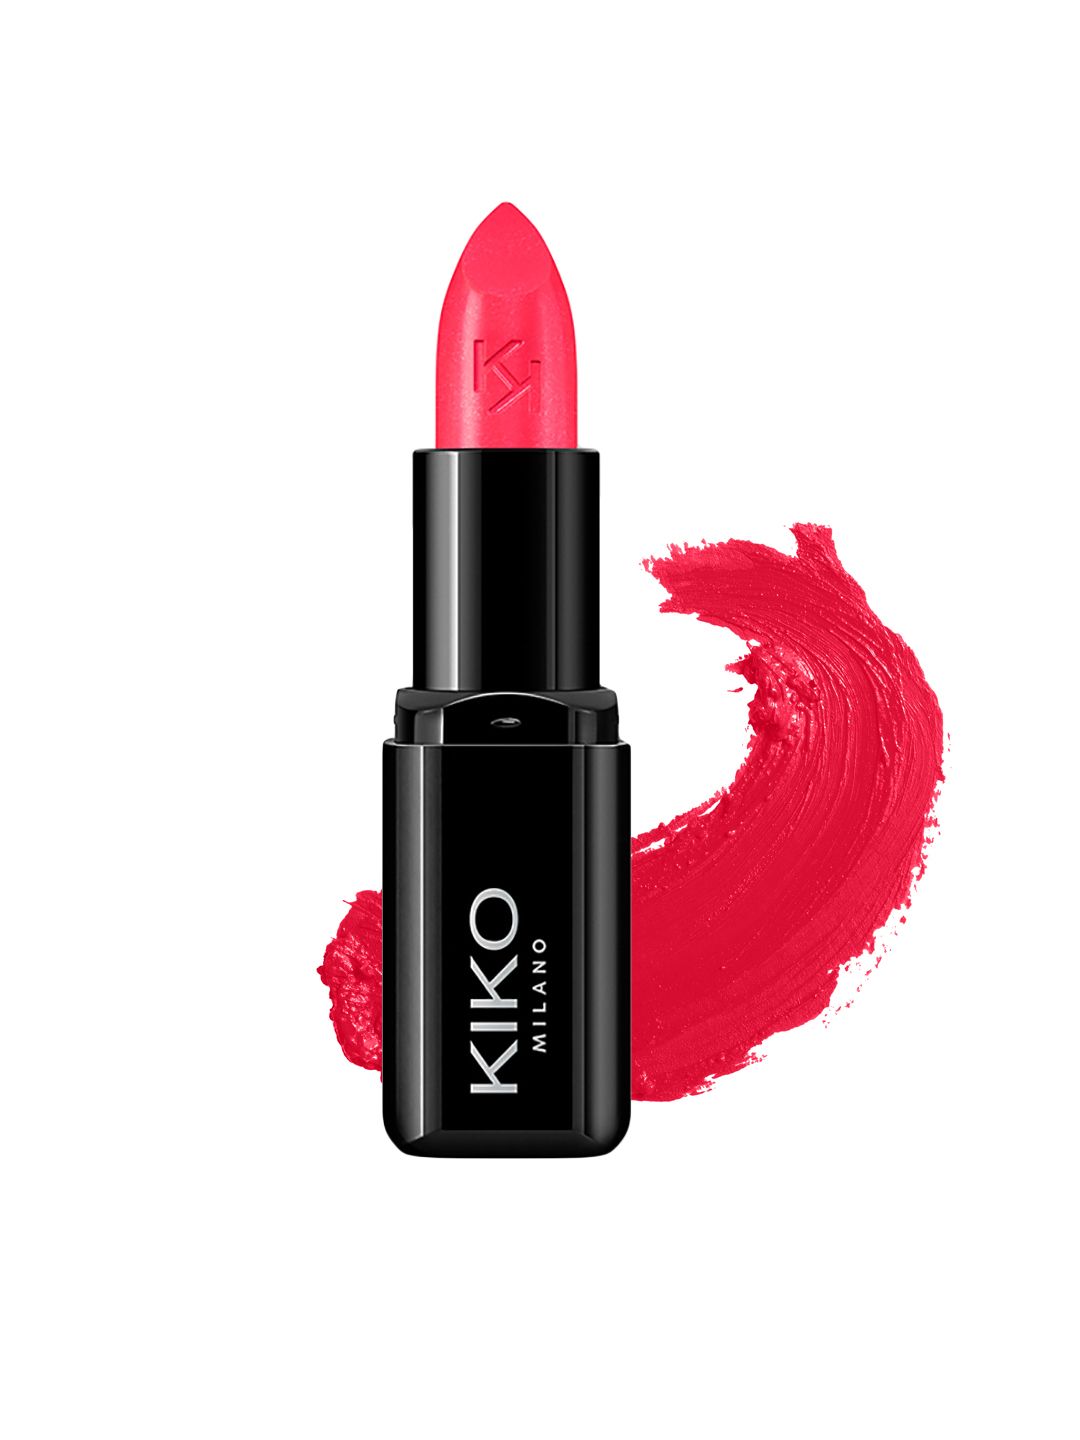 KIKO MILANO Smart Fusion Lipstick 412 Price in India